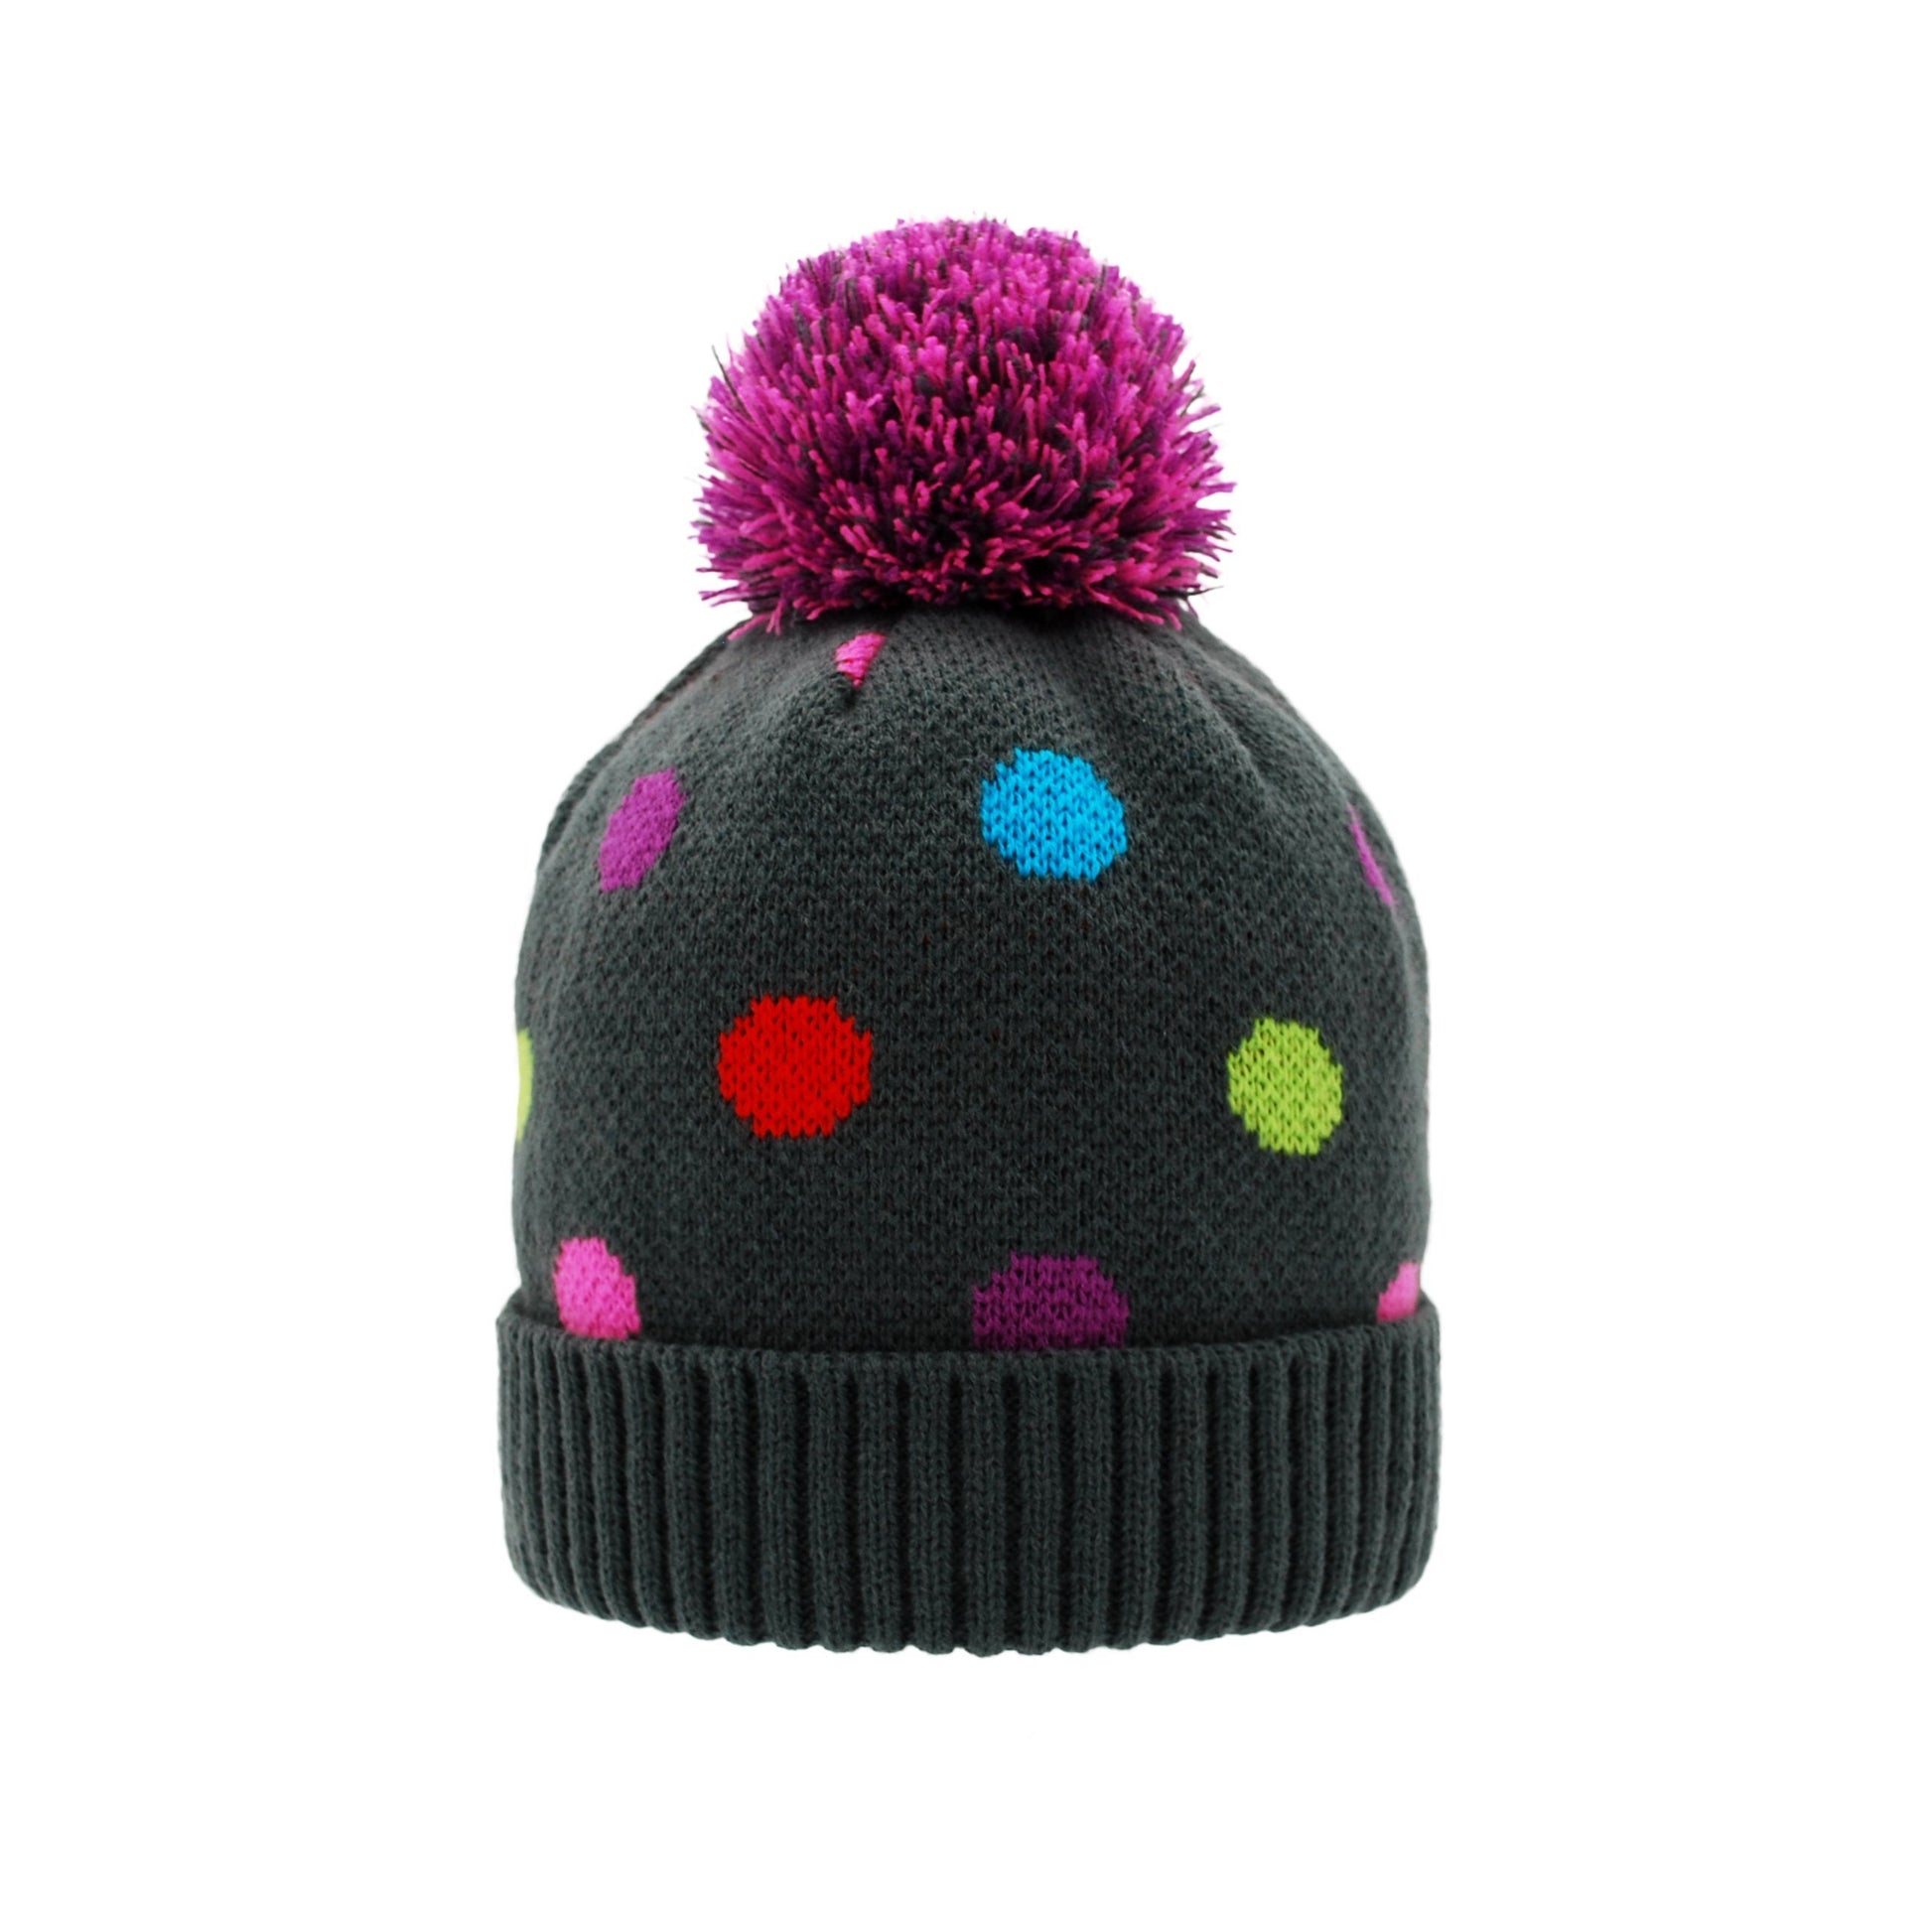 Pudus Kids Beanie Hat with Pom Pom, Sherpa-Lined Winter Knit Hats for Boys Girls Polka Dot Pom Pom Beanie Hat - Kids